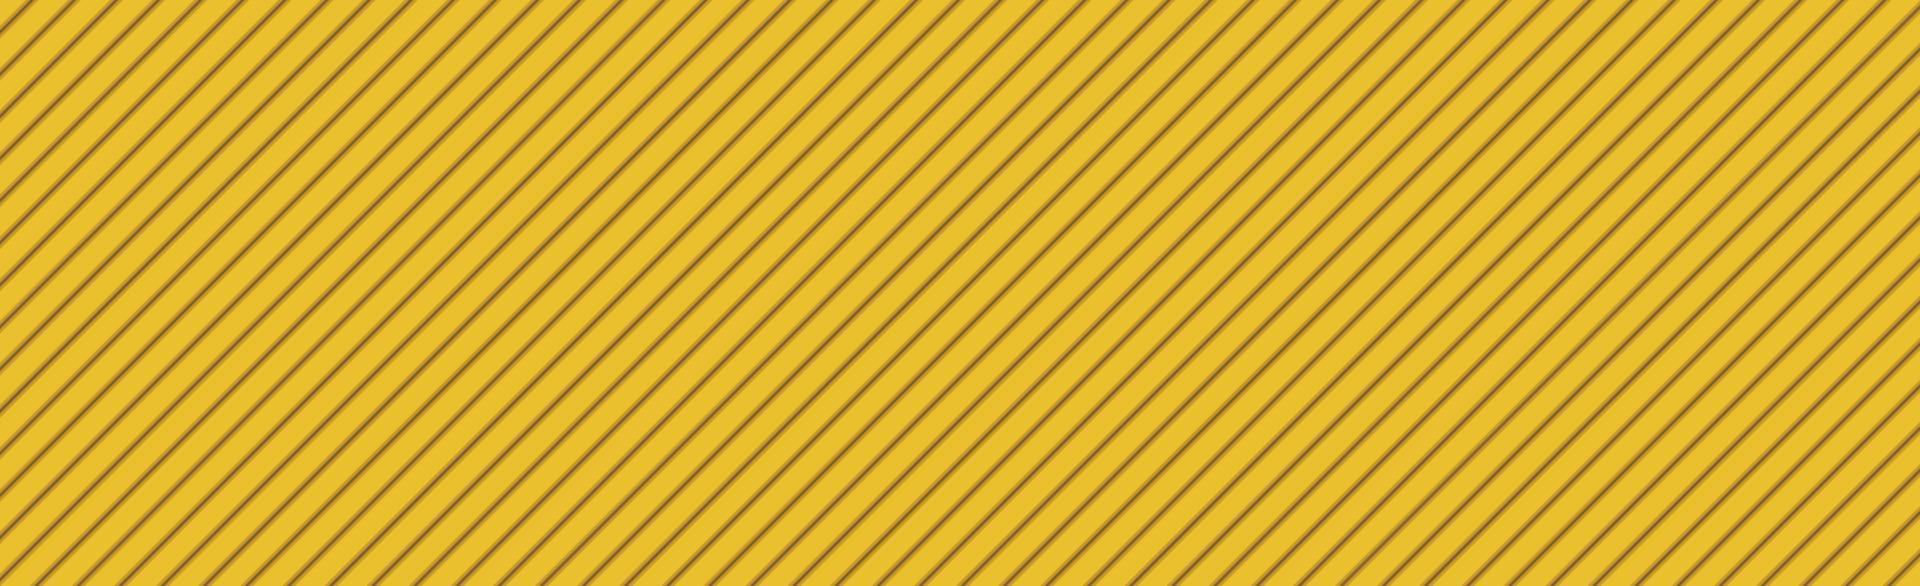 sfondo panoramico astratto giallo-arancio trama linee oblique - vettore